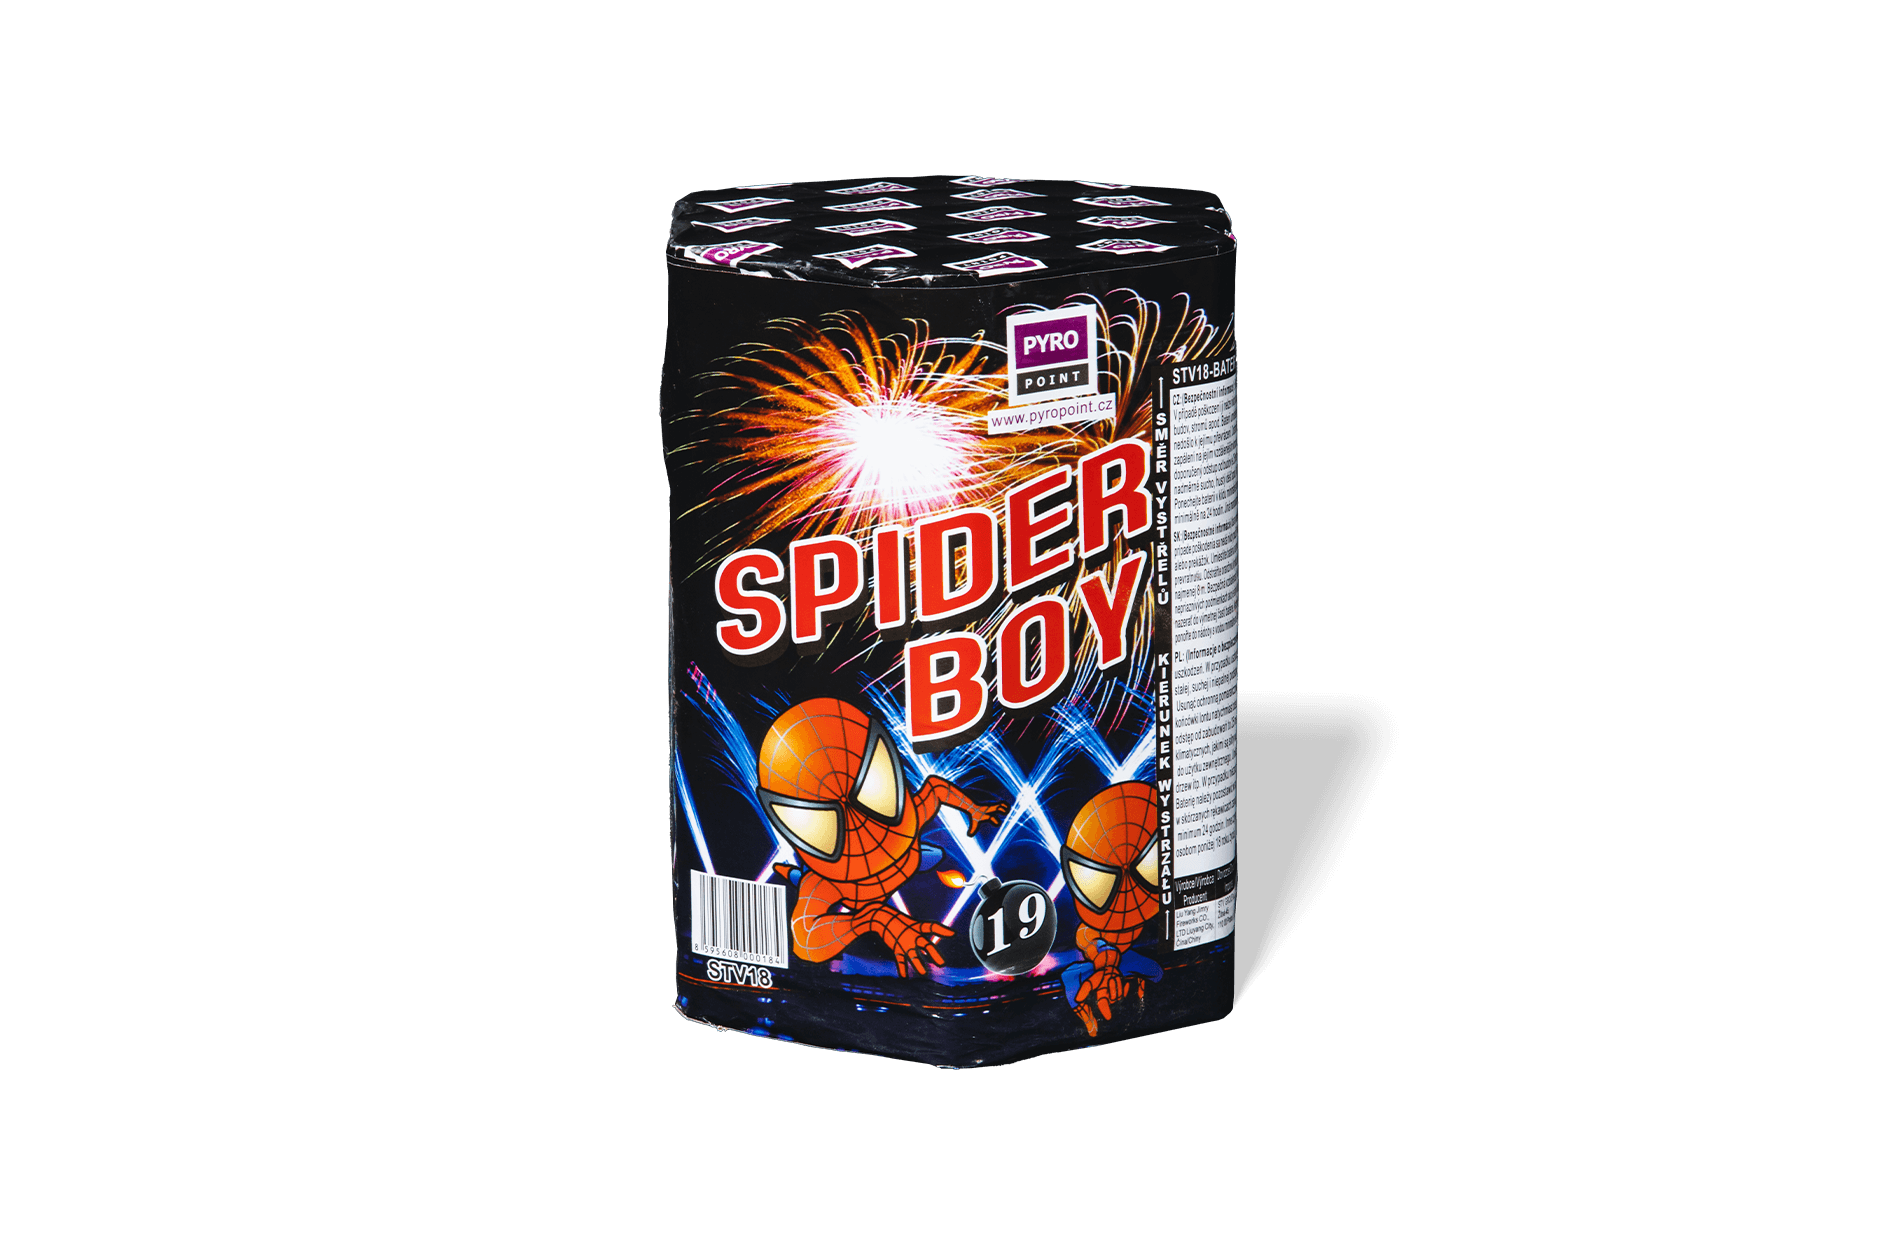 Kompakt Spider Boy